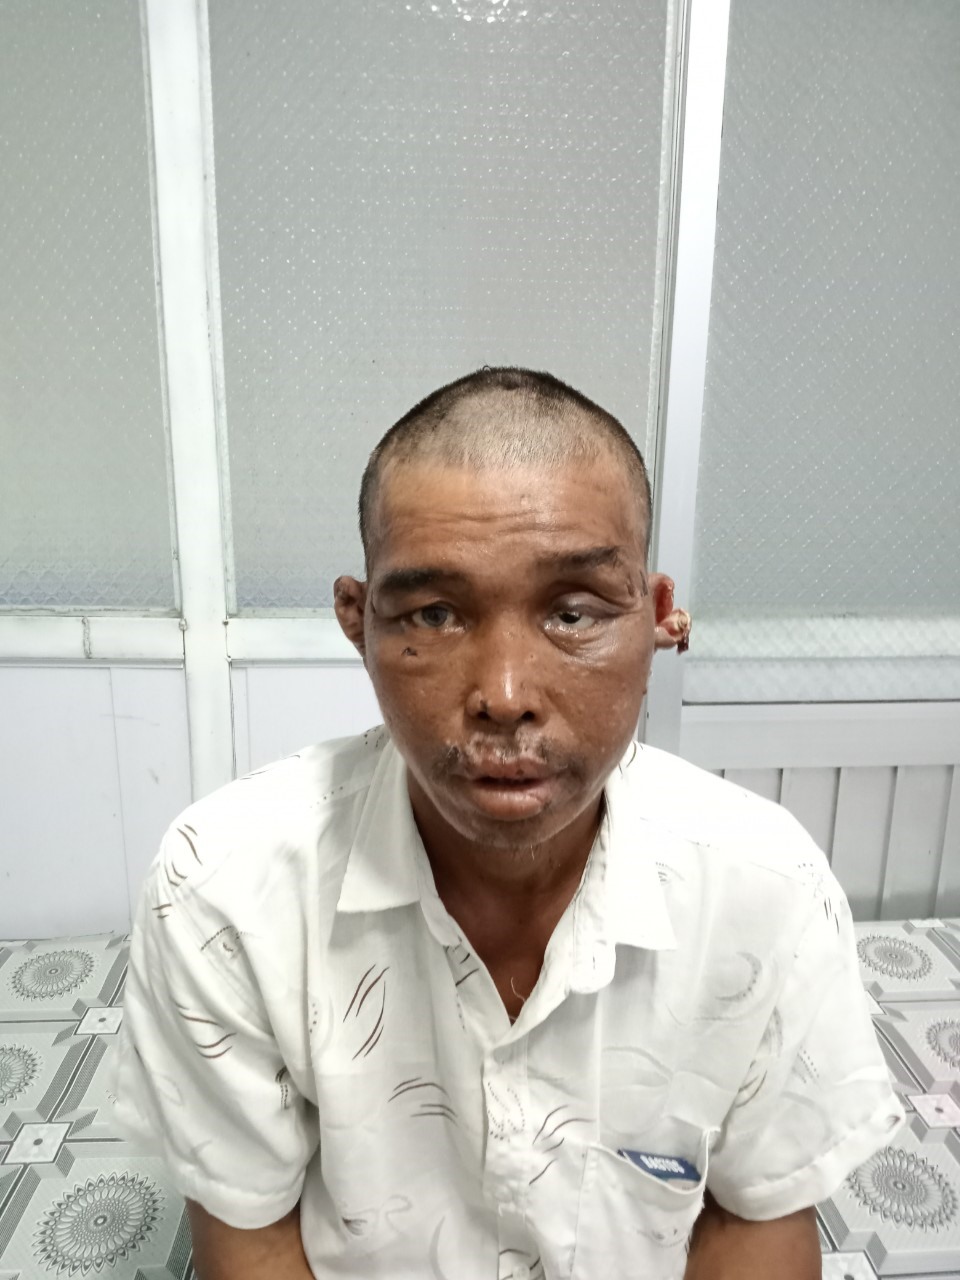 Ngư phủ Trương Văn Trung 47 tuổi, ngụ huyện U Minh Thượng, tỉnh Kiên Giang sau khi đã vào bờ được đưa đi giám định thương tật. Ảnh: Công an cung cấp